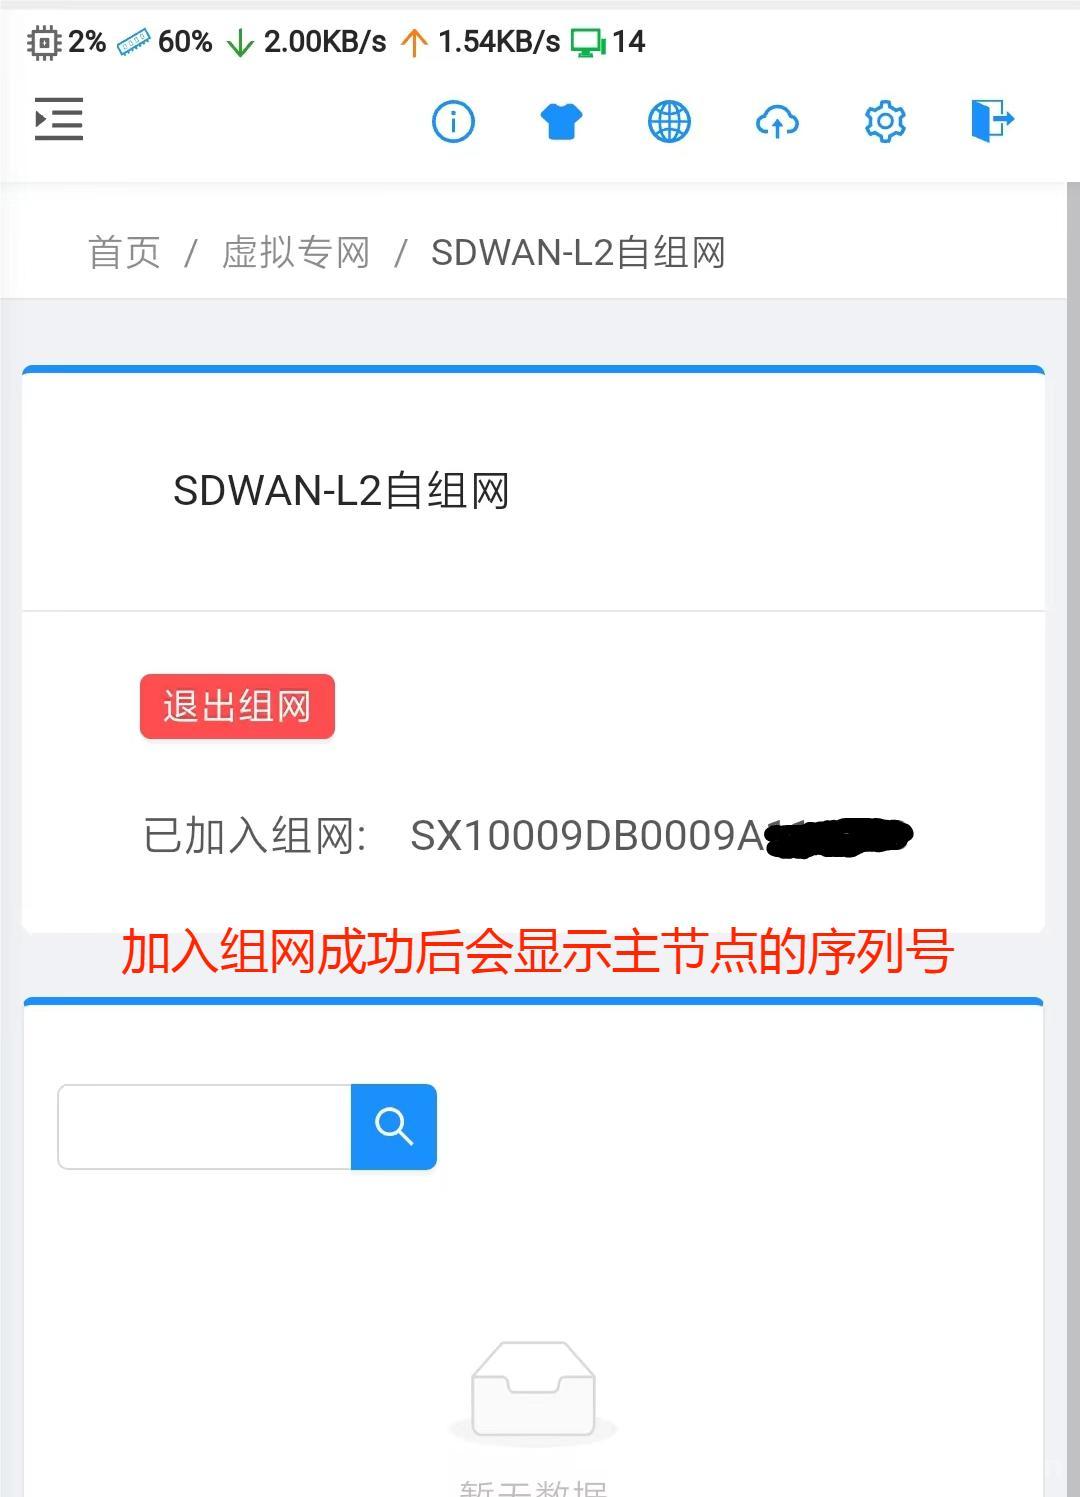 [教程]高格路由器SDWAN-L2二层自组网是啥？ 怎么设置？ 